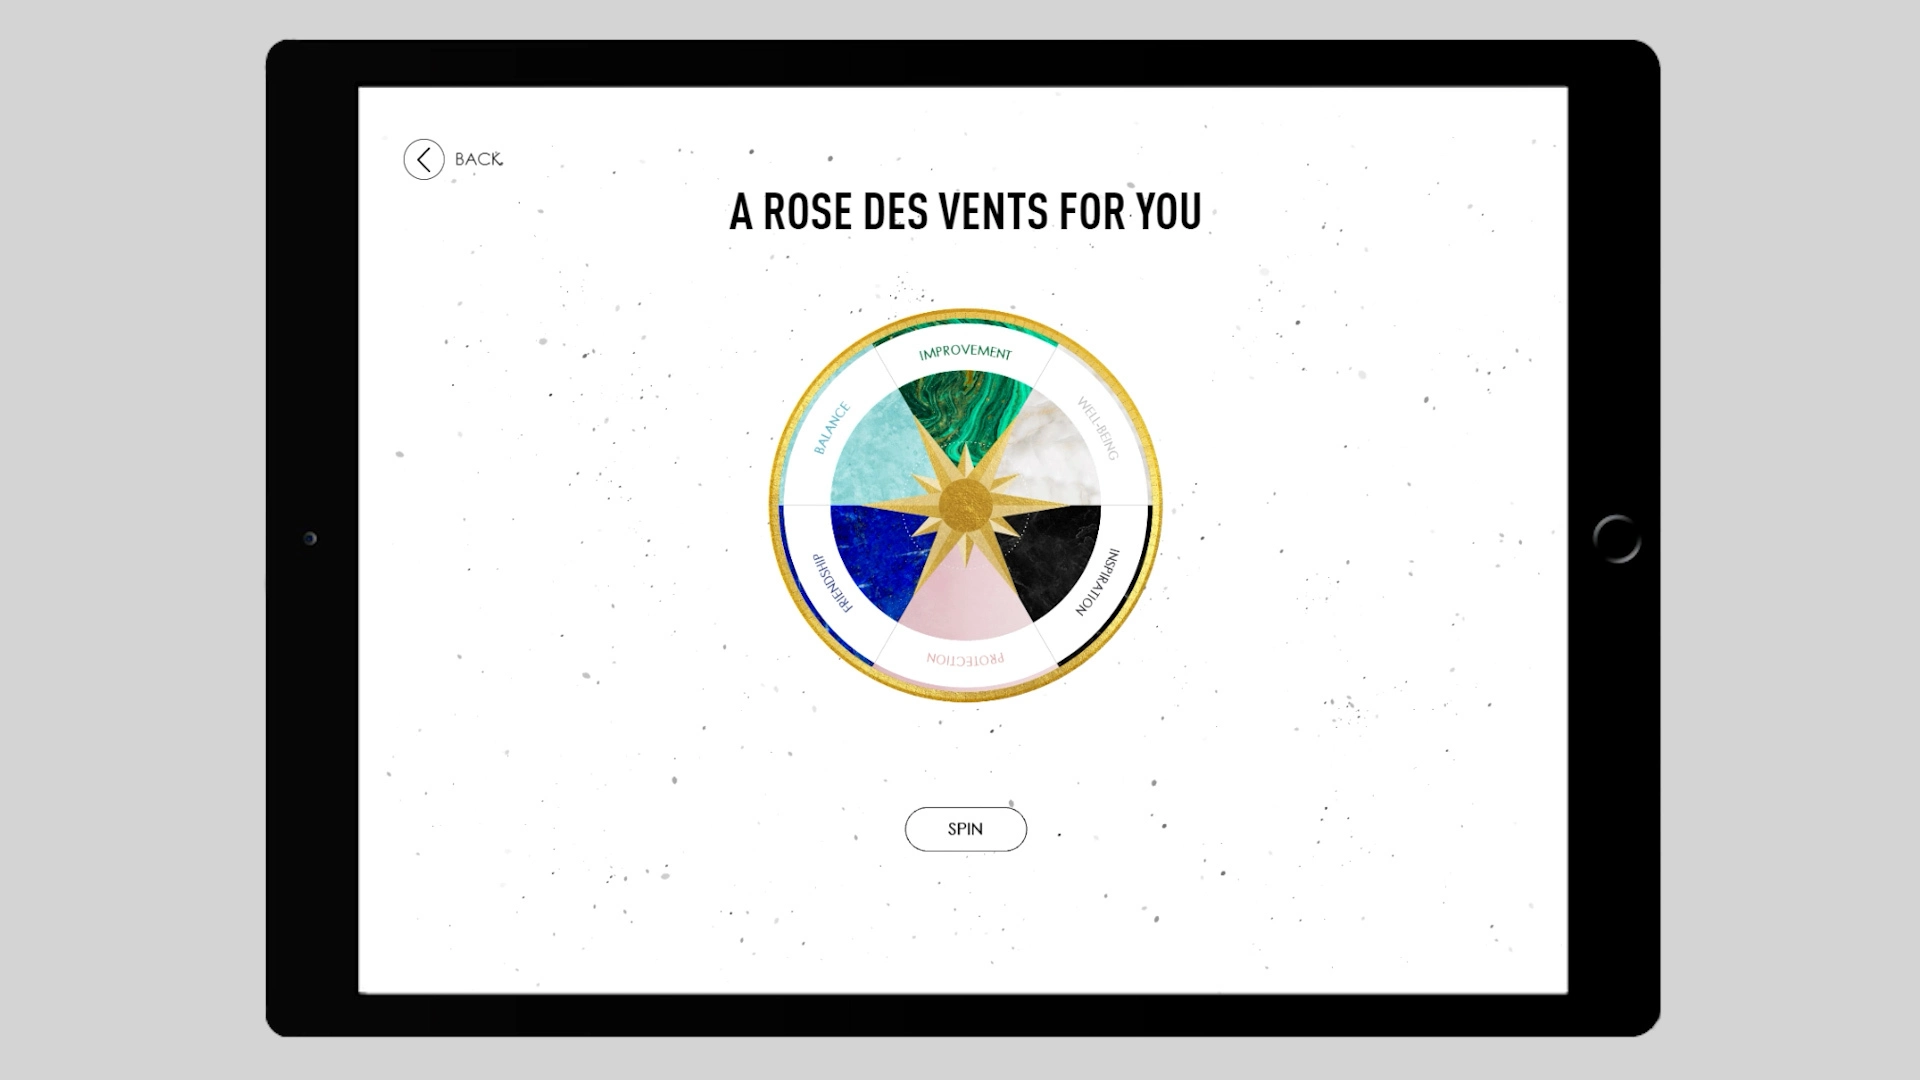 Bild einer Rose Des Vents, die das von Dior organisierte Spiel "Welche Rose Des Vents sind Sie?" symbolisiert.